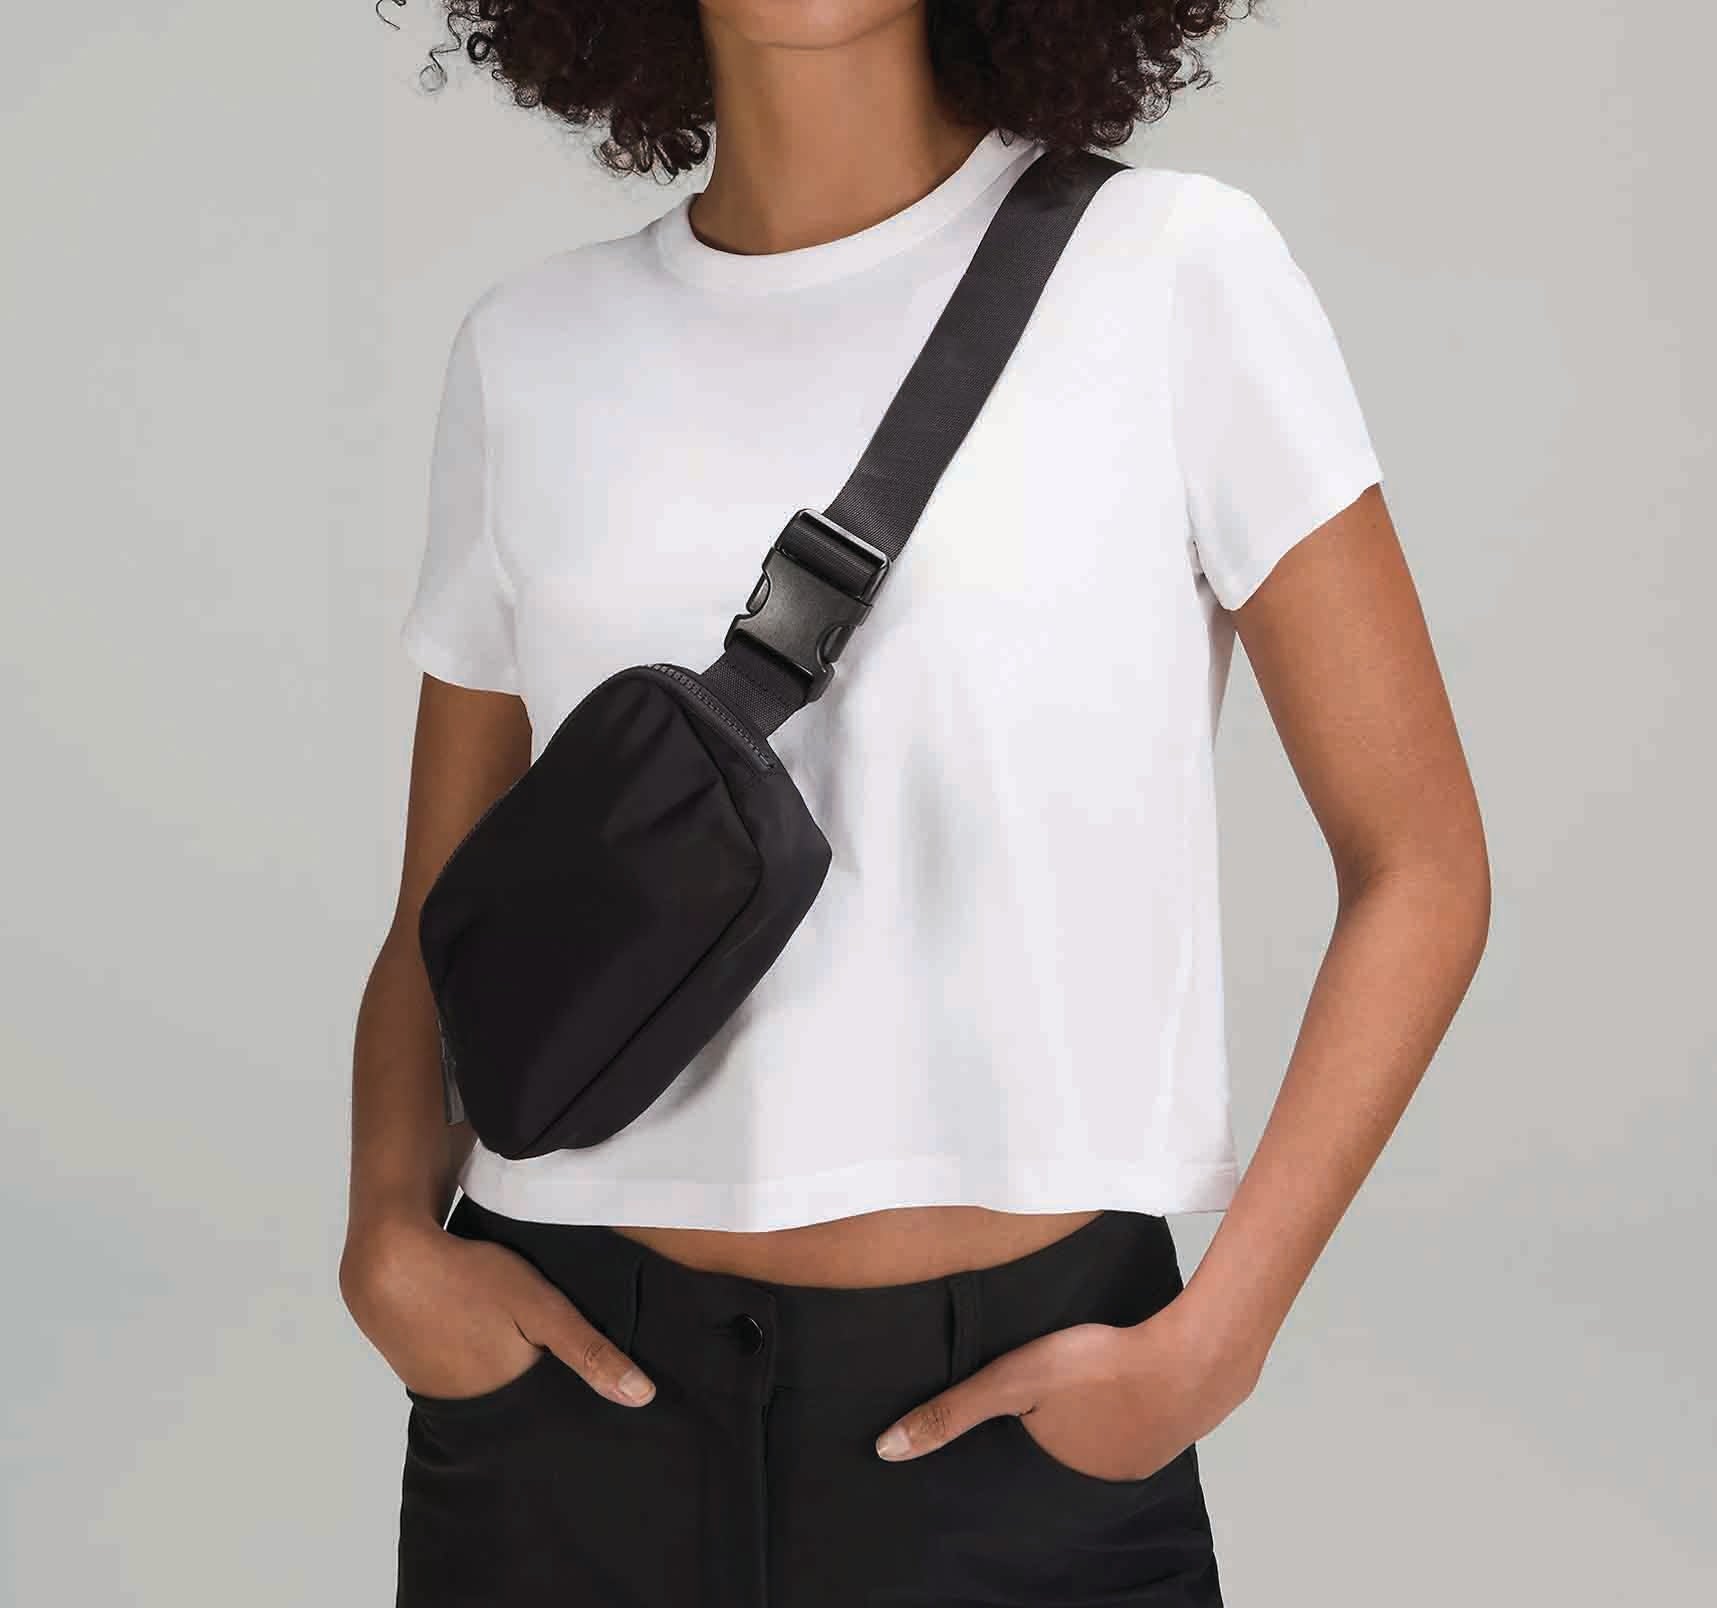 Curvy Girl Belt Bag Plus Size Fanny Pack Adjustable Strap 